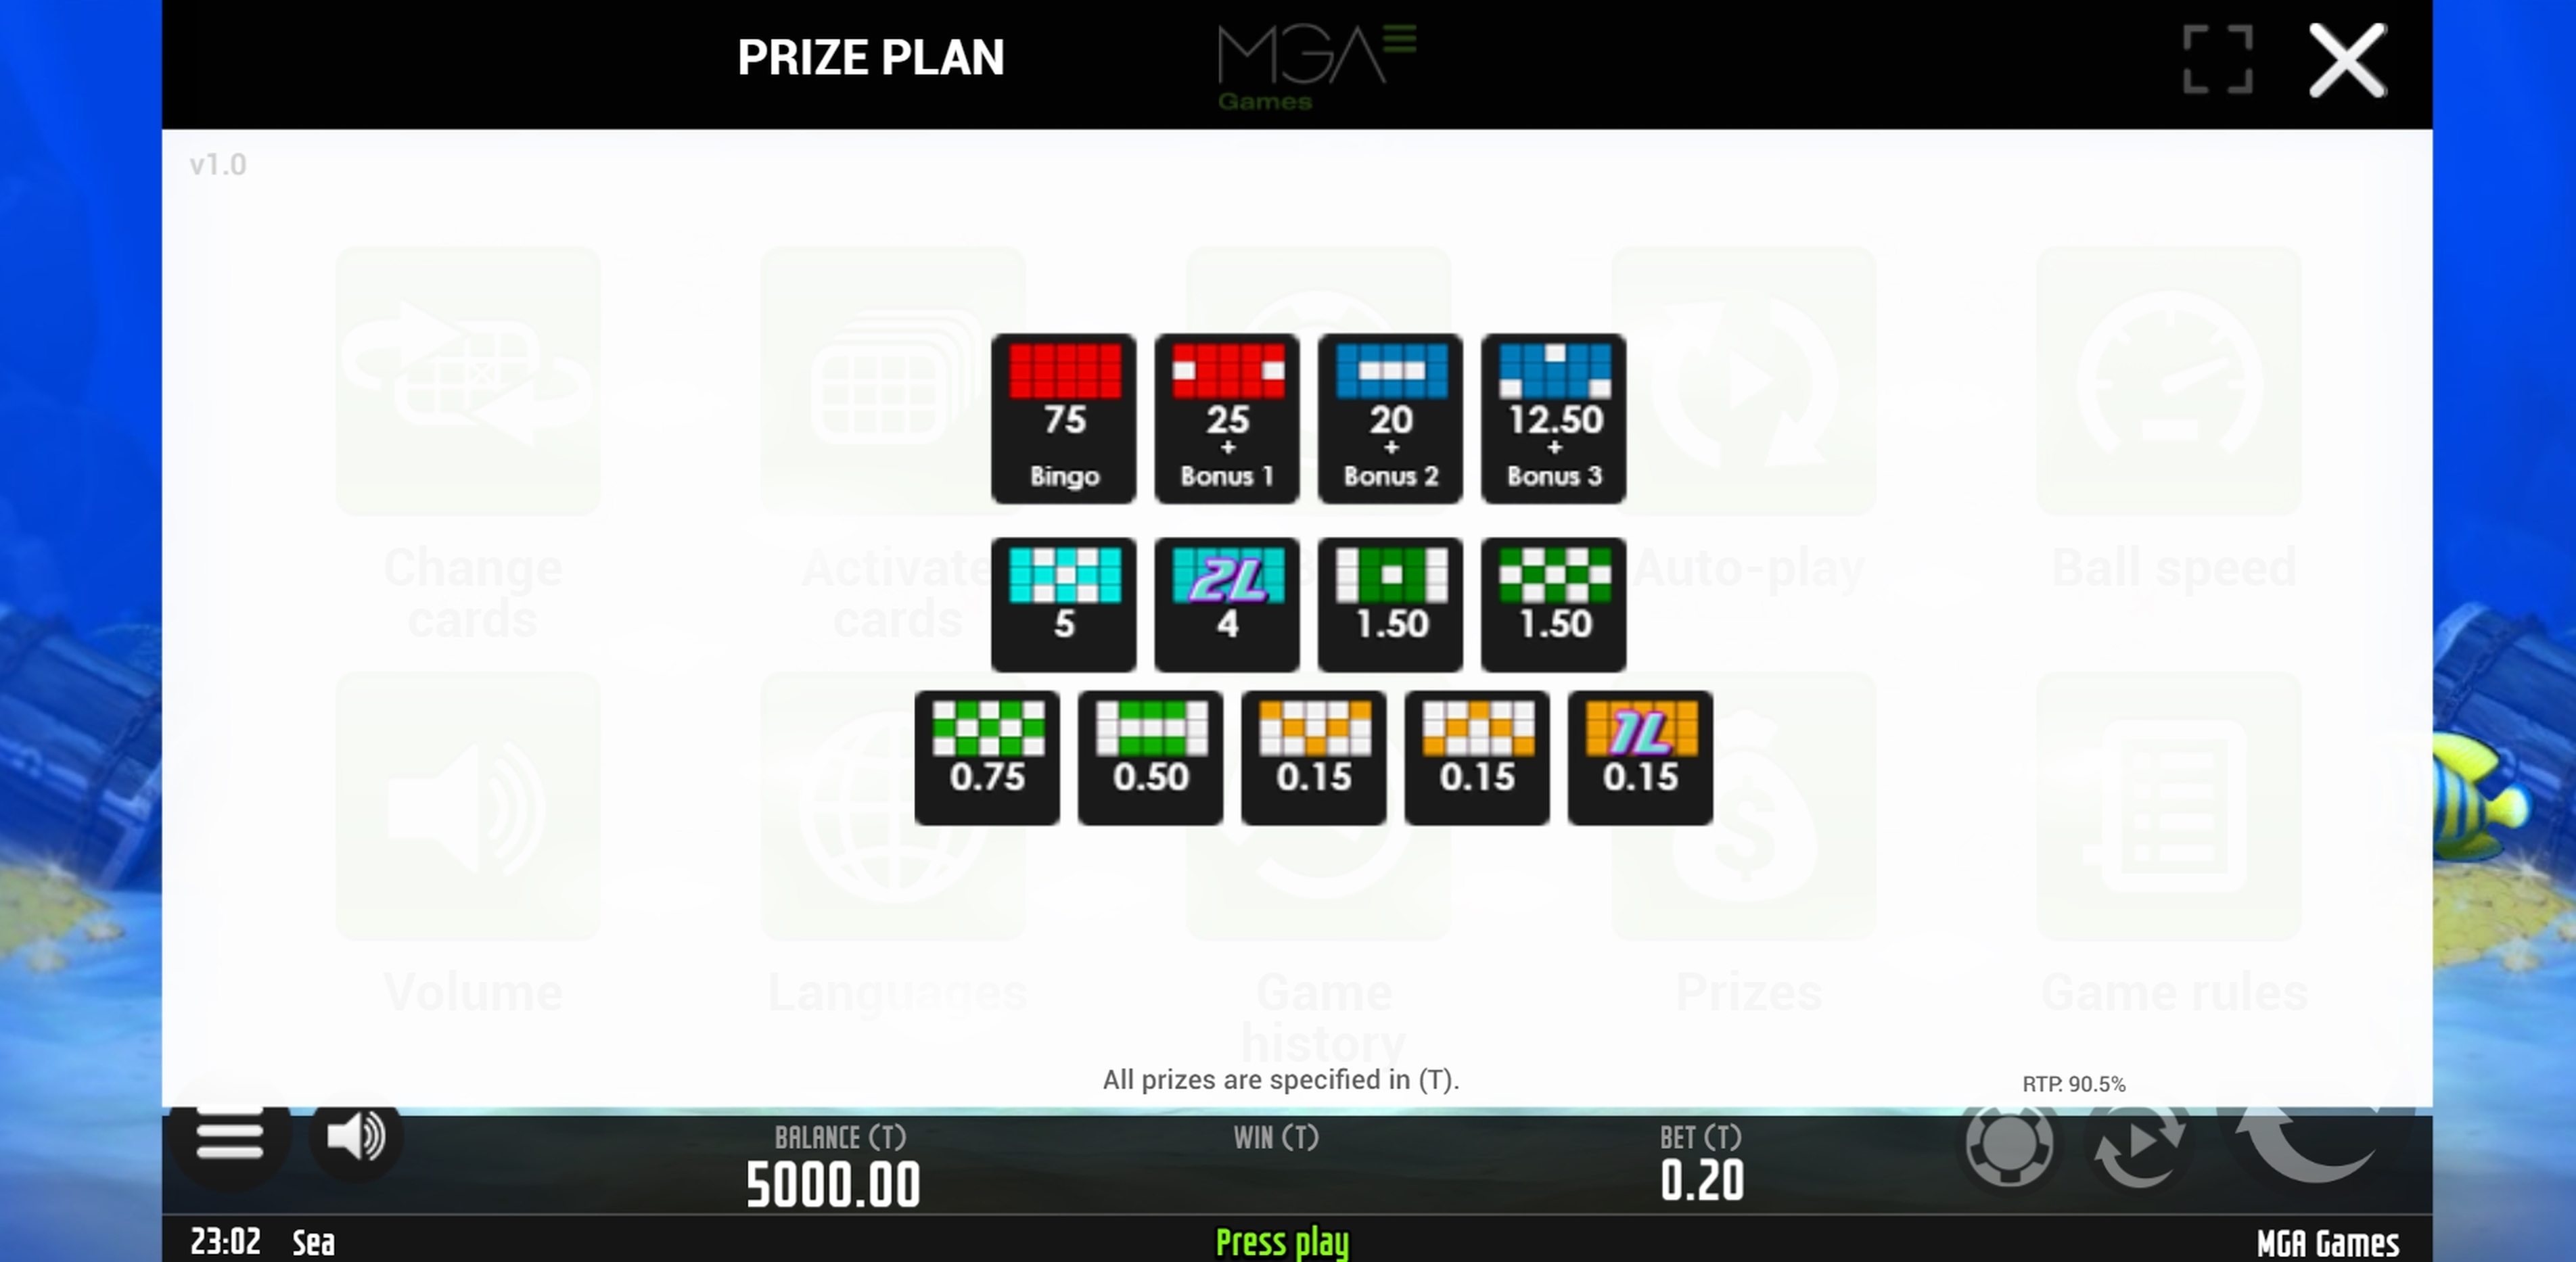 Info of Sea Bingo Slot Game by MGA